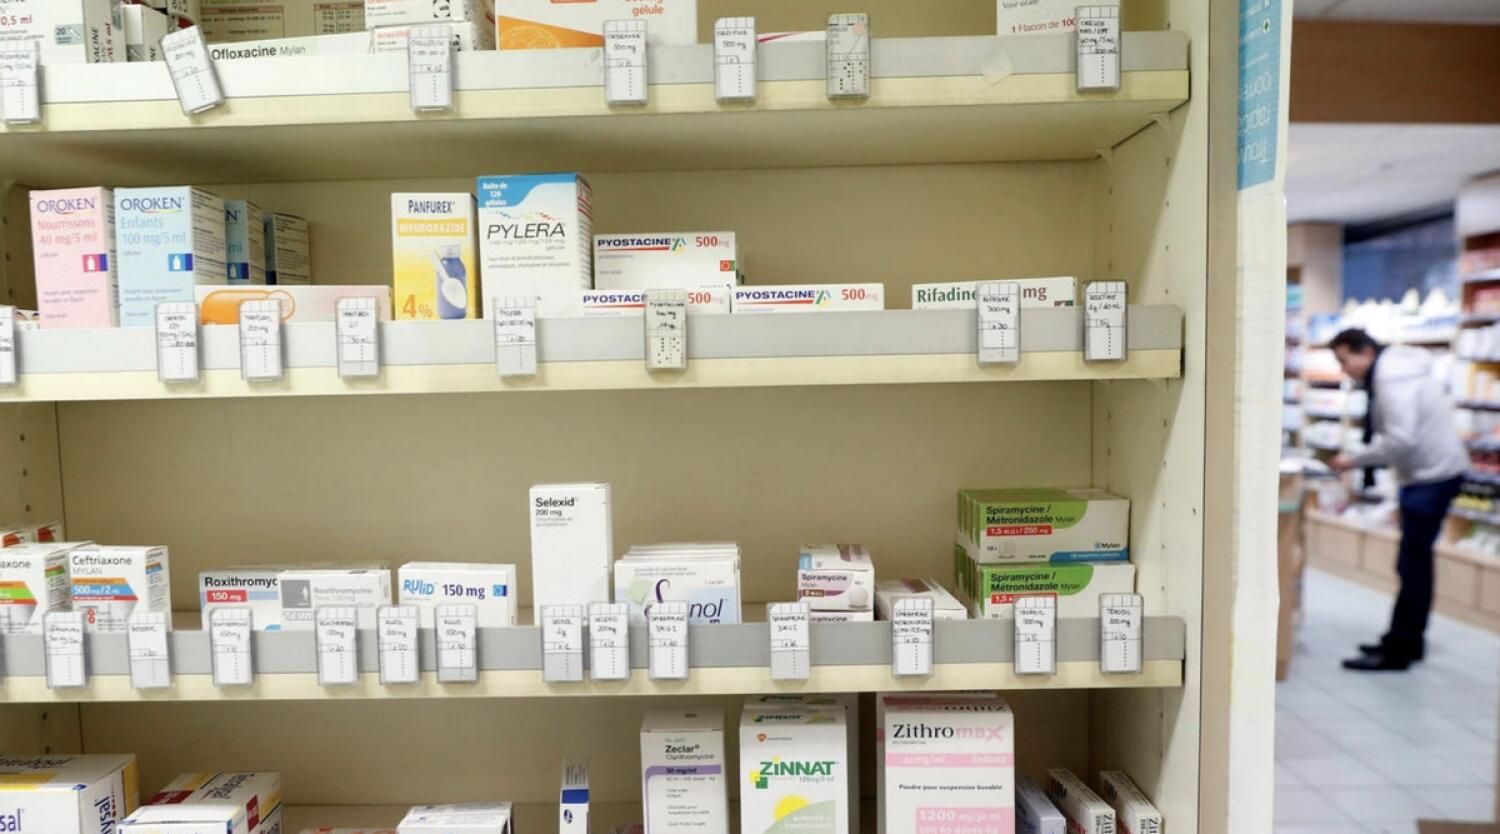 الإمارات العربية المتحدة: تمّ إطلاق 9 مبادرات لخفض أسعار الأدوية في الصيدليات منذ عام 2011